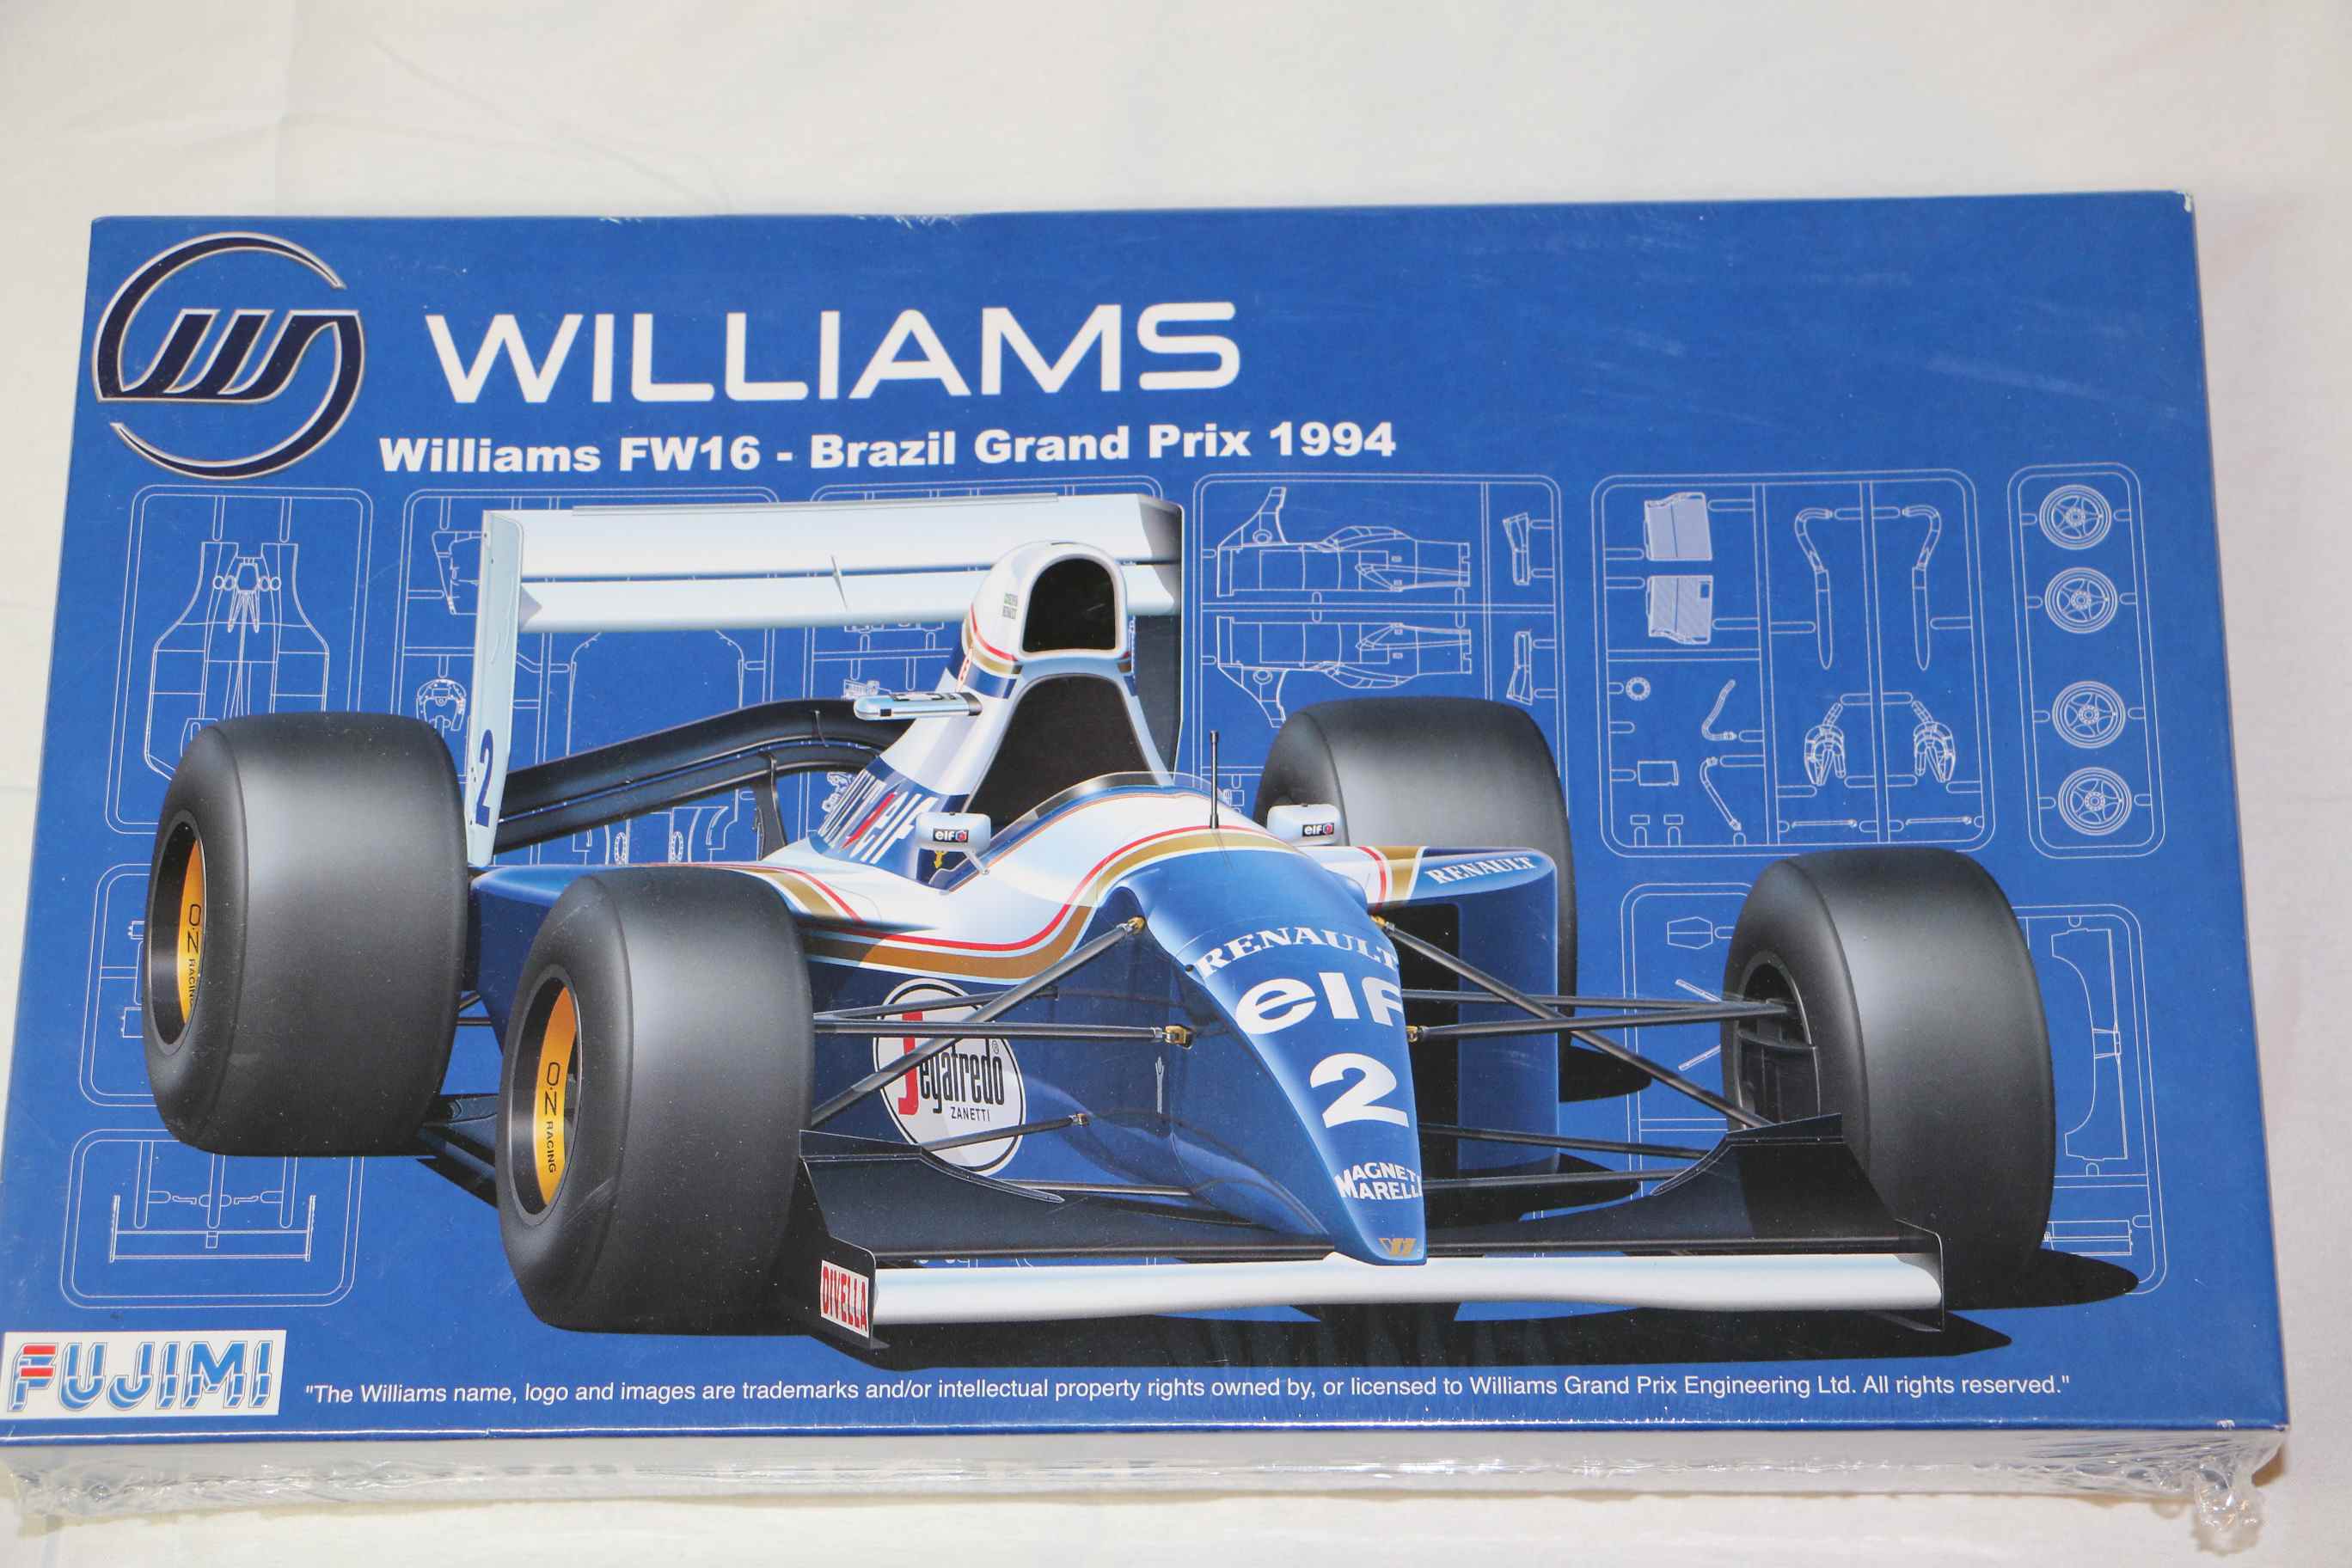 FUJ090597 - Fujimi 1/20 Williams FW16 Brazil 1994